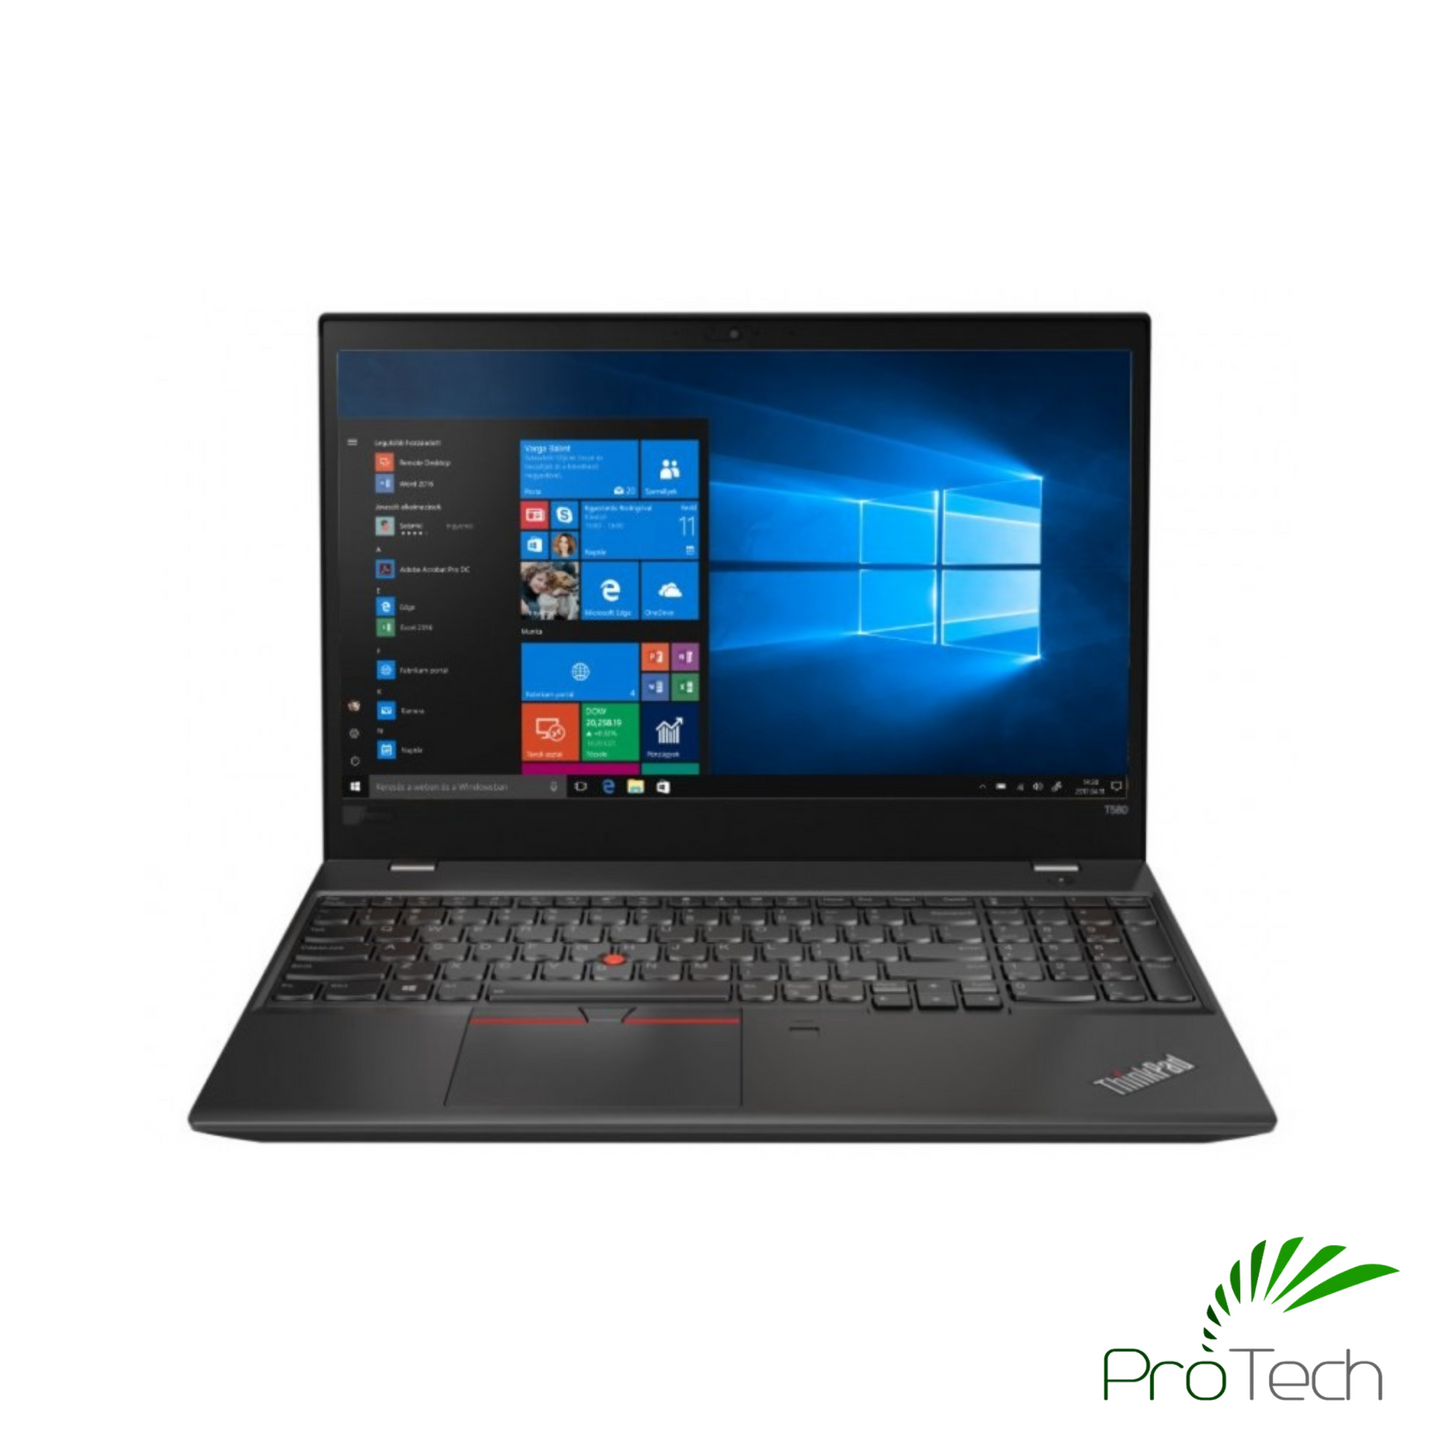 Lenovo ThinkPad T580 4K 15.6" | Core i7 | 32GB RAM | 512GB SSD | NVidia MX150